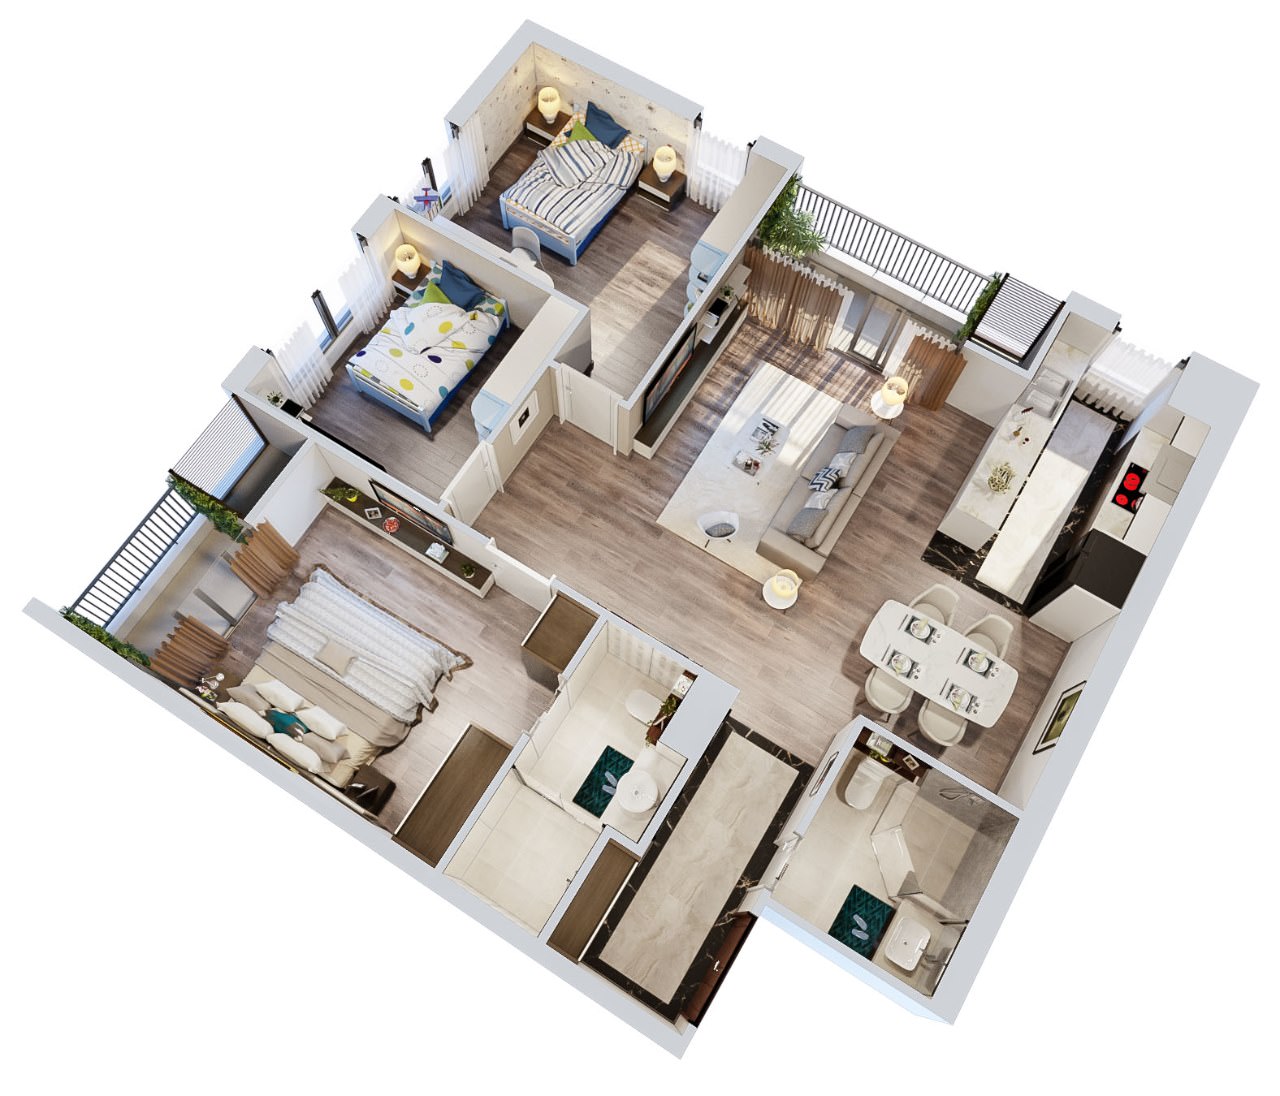 Bản vẽ 3D thiết kế căn hộ sẽ giúp gia chủ hình dung rõ hơn về ngôi nhà tương lai của mình